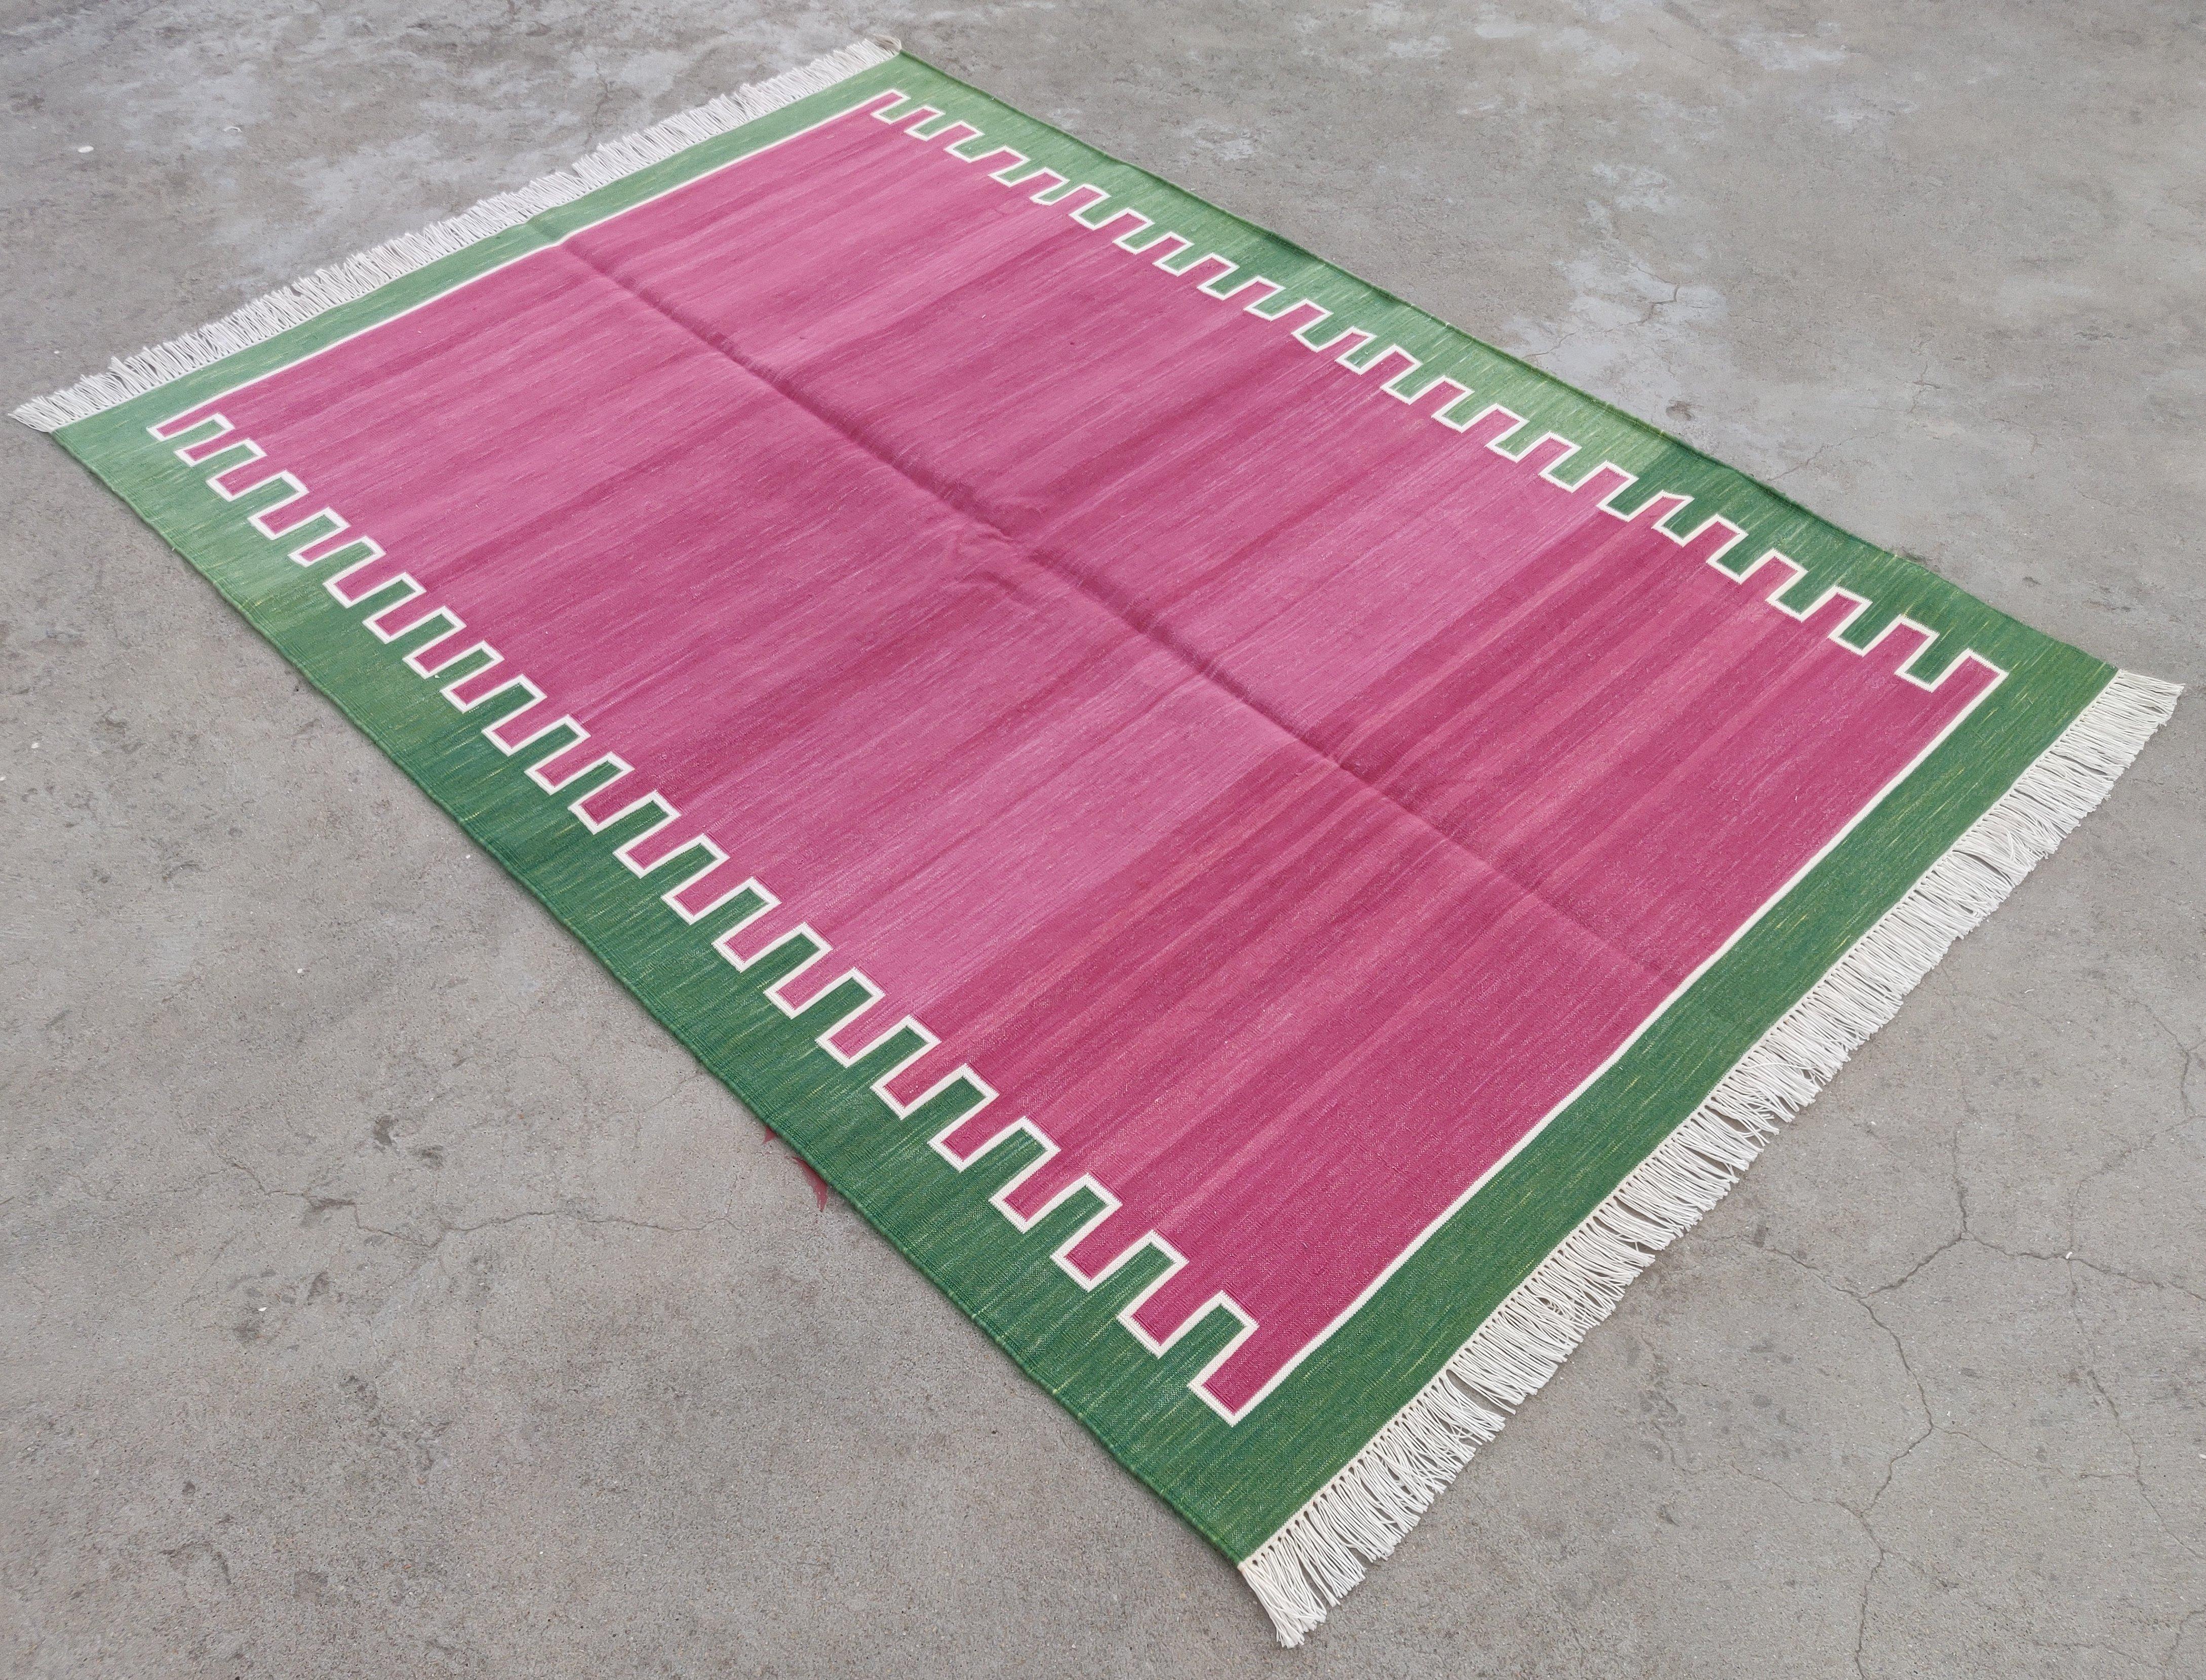 Baumwolle pflanzlich gefärbt Himbeere rosa und grün Zickzack gestreiften indischen Dhurrie Teppich-4'x6' 

Diese speziellen flachgewebten Dhurries werden aus 15-fachem Garn aus 100% Baumwolle handgewebt. Aufgrund der speziellen Fertigungstechniken,